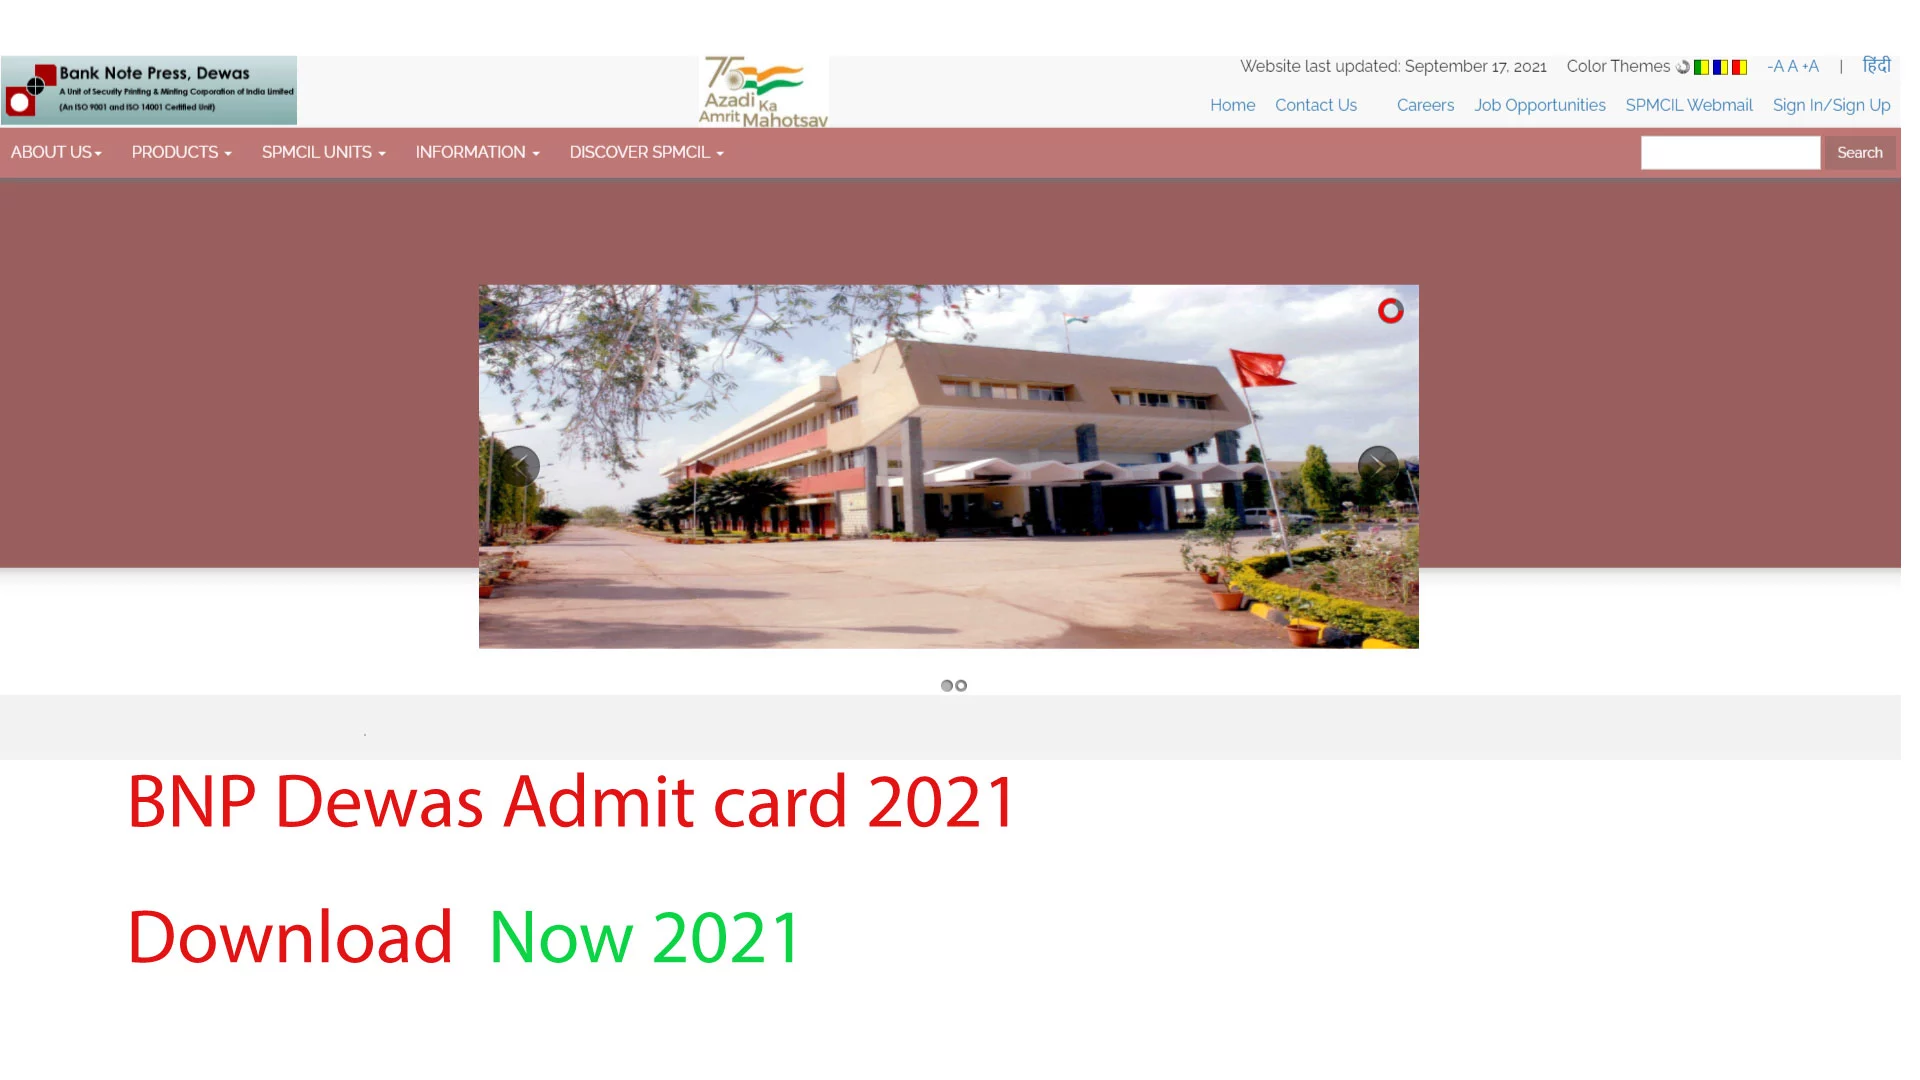 BNP Dewas Admit Card 2021